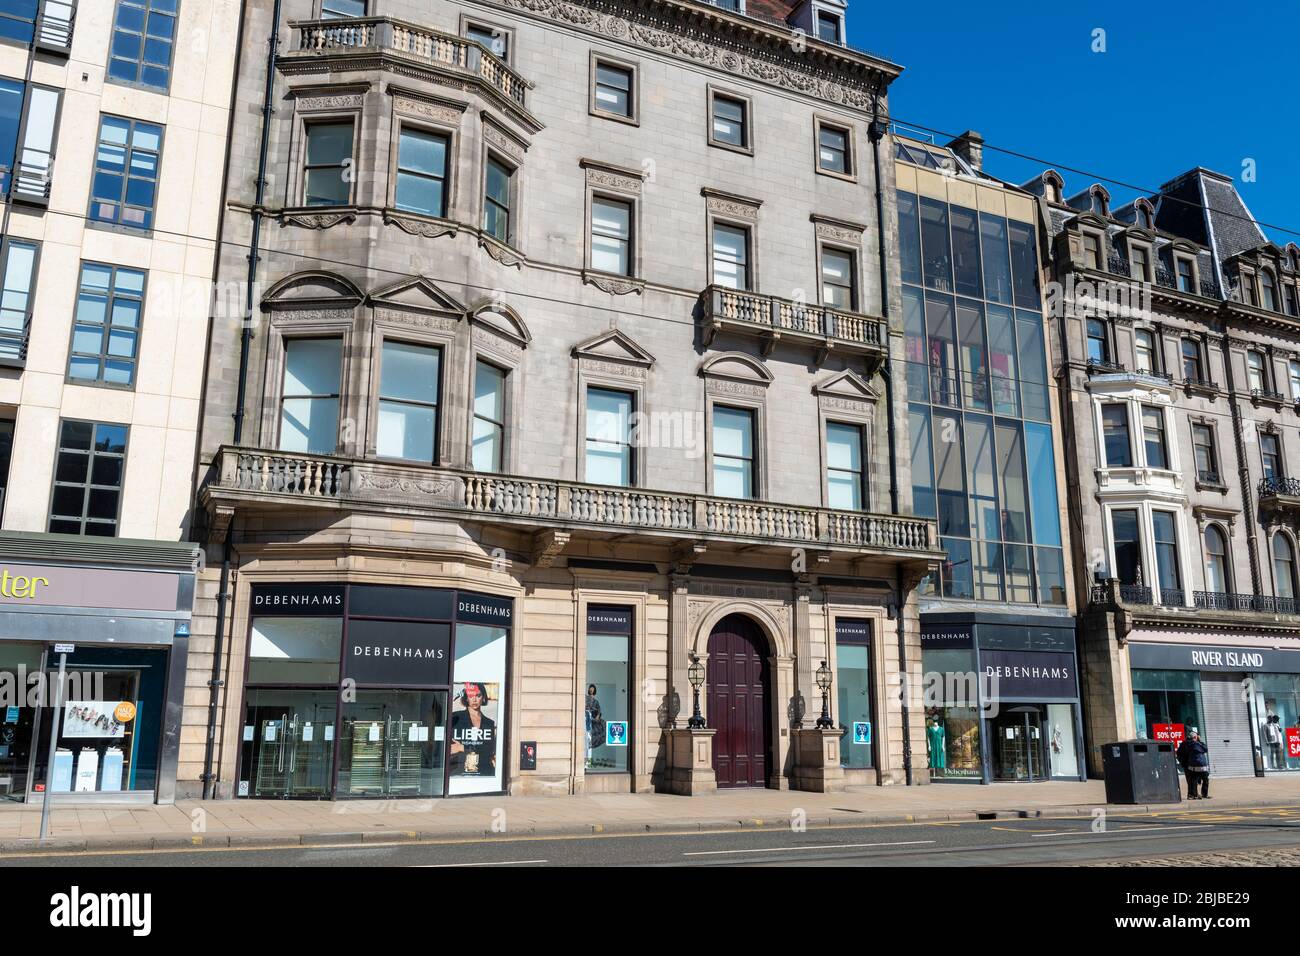 Geschäfte und Unternehmen, darunter das Debenhams Department Store in der Princes Street, sind während der Sperrung des Coronavirus geschlossen - Edinburgh, Schottland, Großbritannien Stockfoto